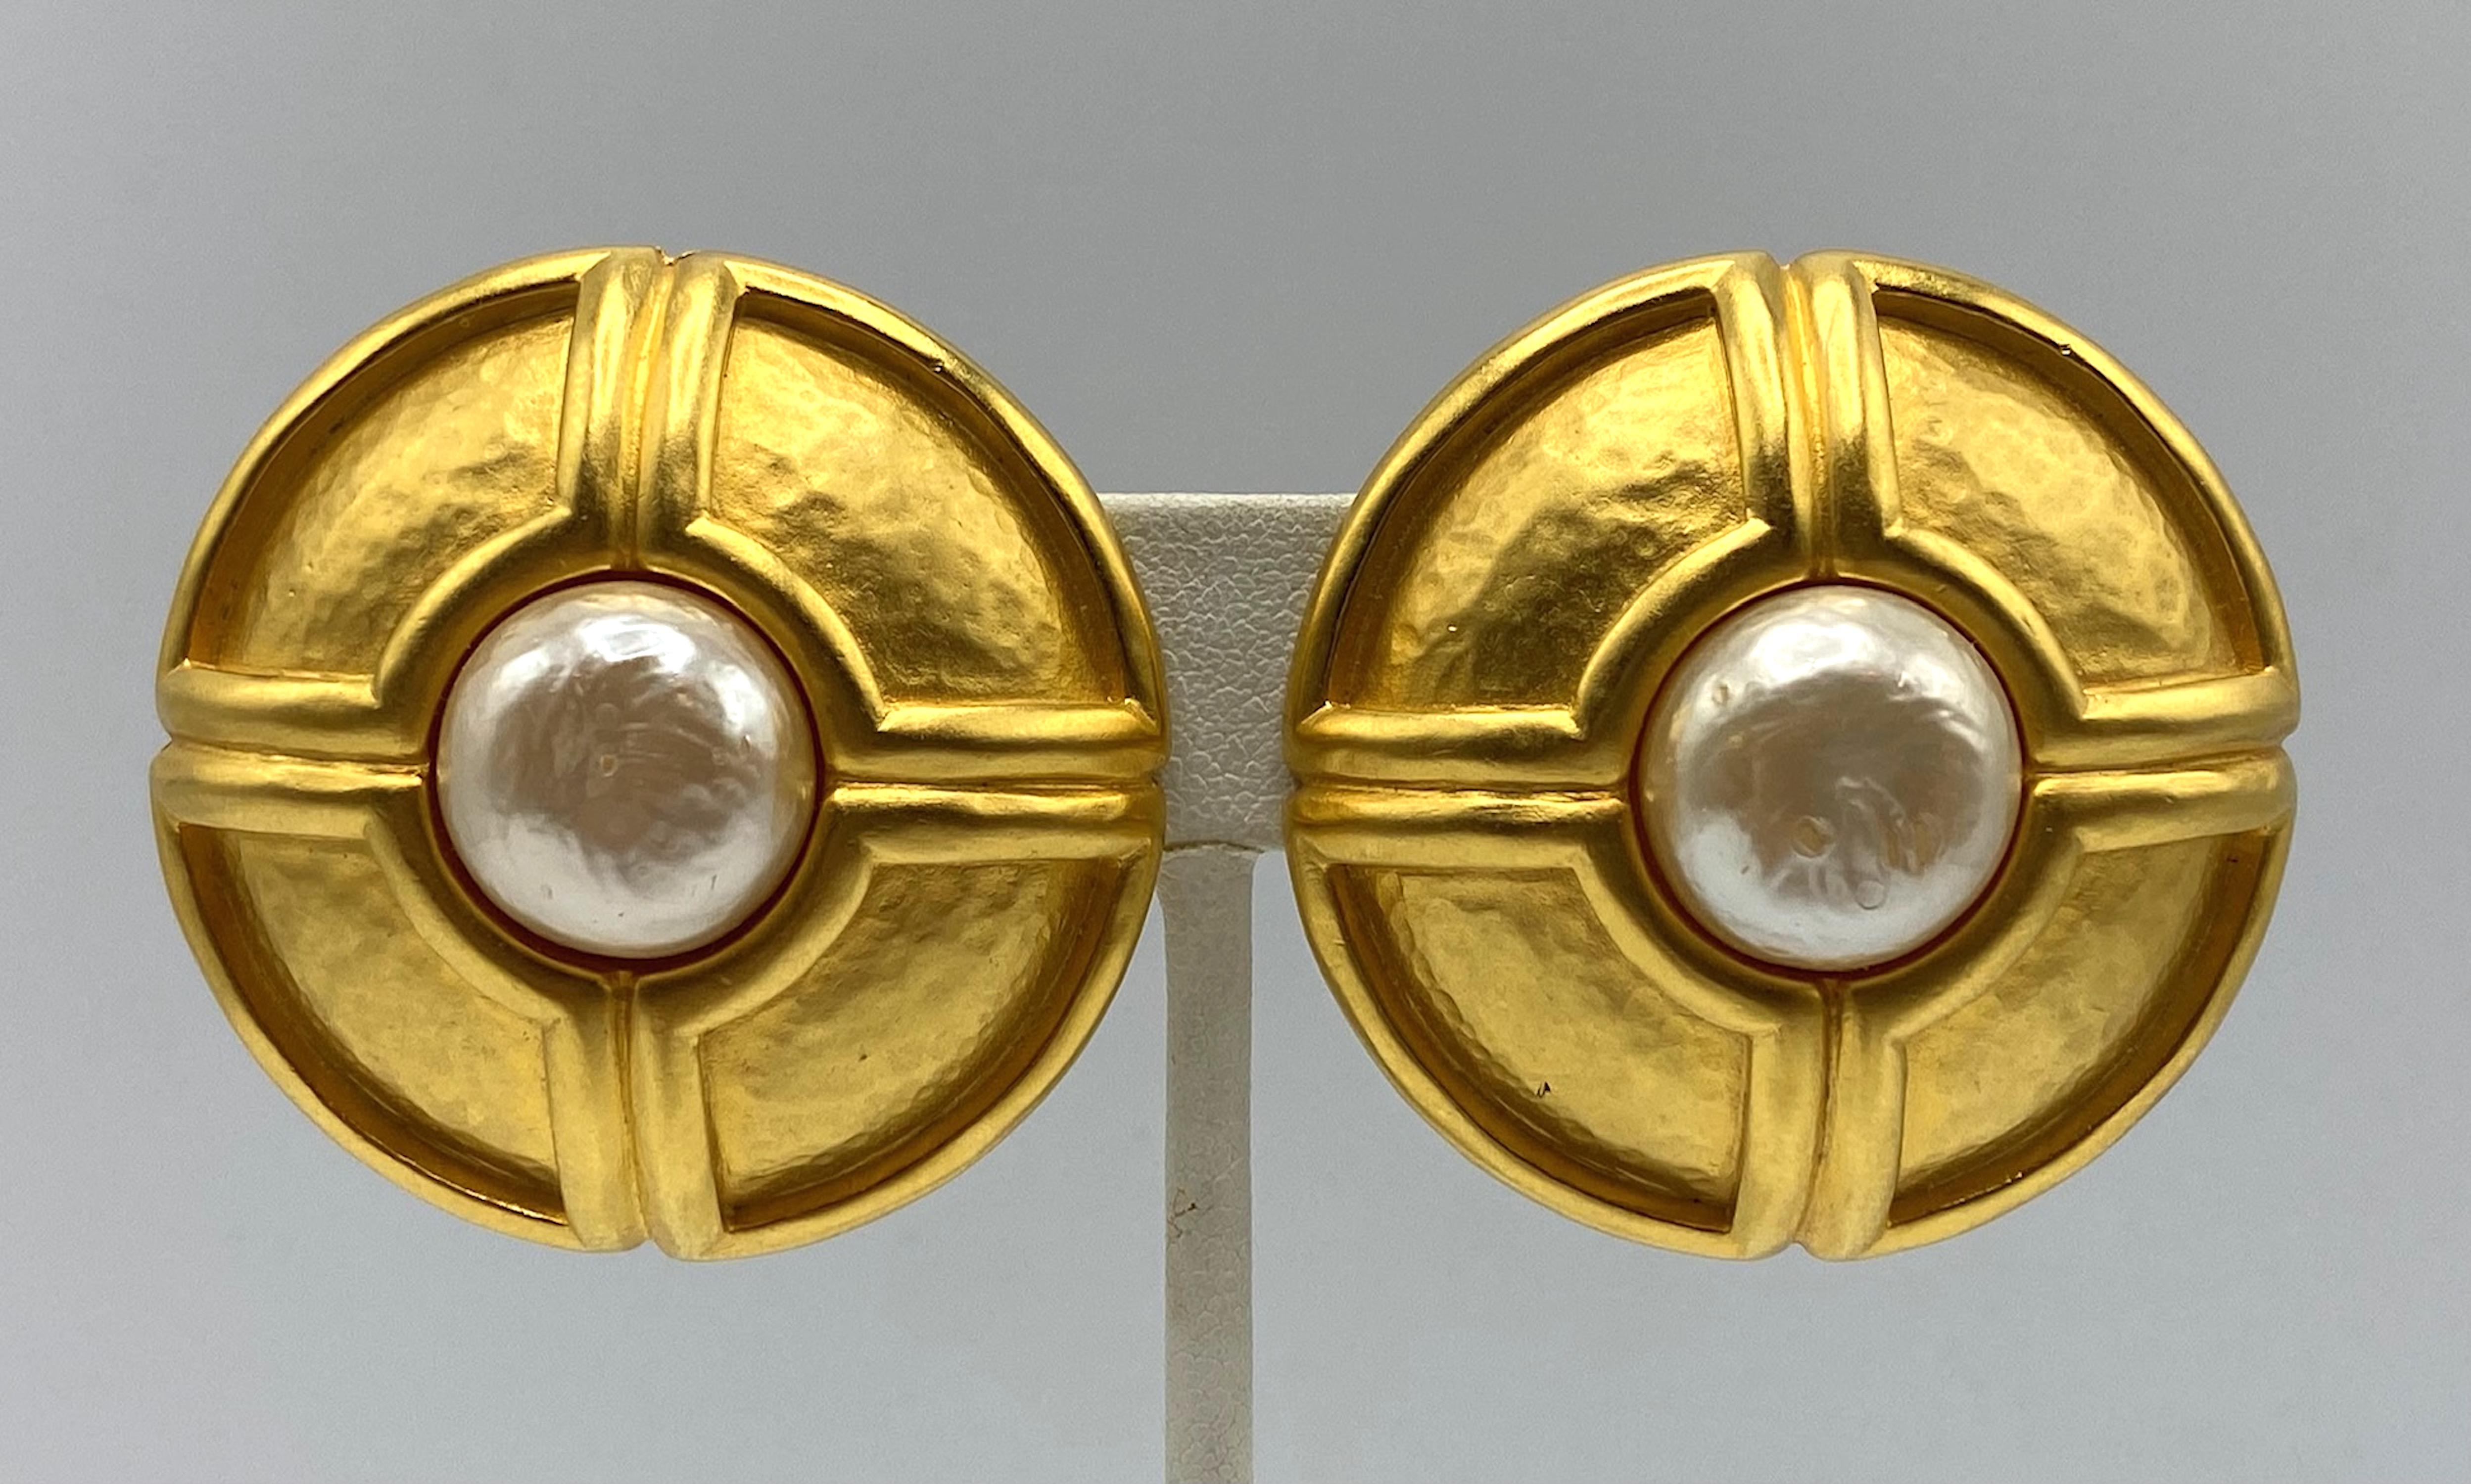 Vintage Karl Lagerfeld Ohrringe aus den 1980er Jahren . Unglaubliche Qualität. Geometrische untere Ohrringe aus satiniertem Goldmartele, in der Mitte eine Perle. Ausgezeichnete Qualität Clip auf Ohrringe in sehr gutem Vintage-Zustand. Der